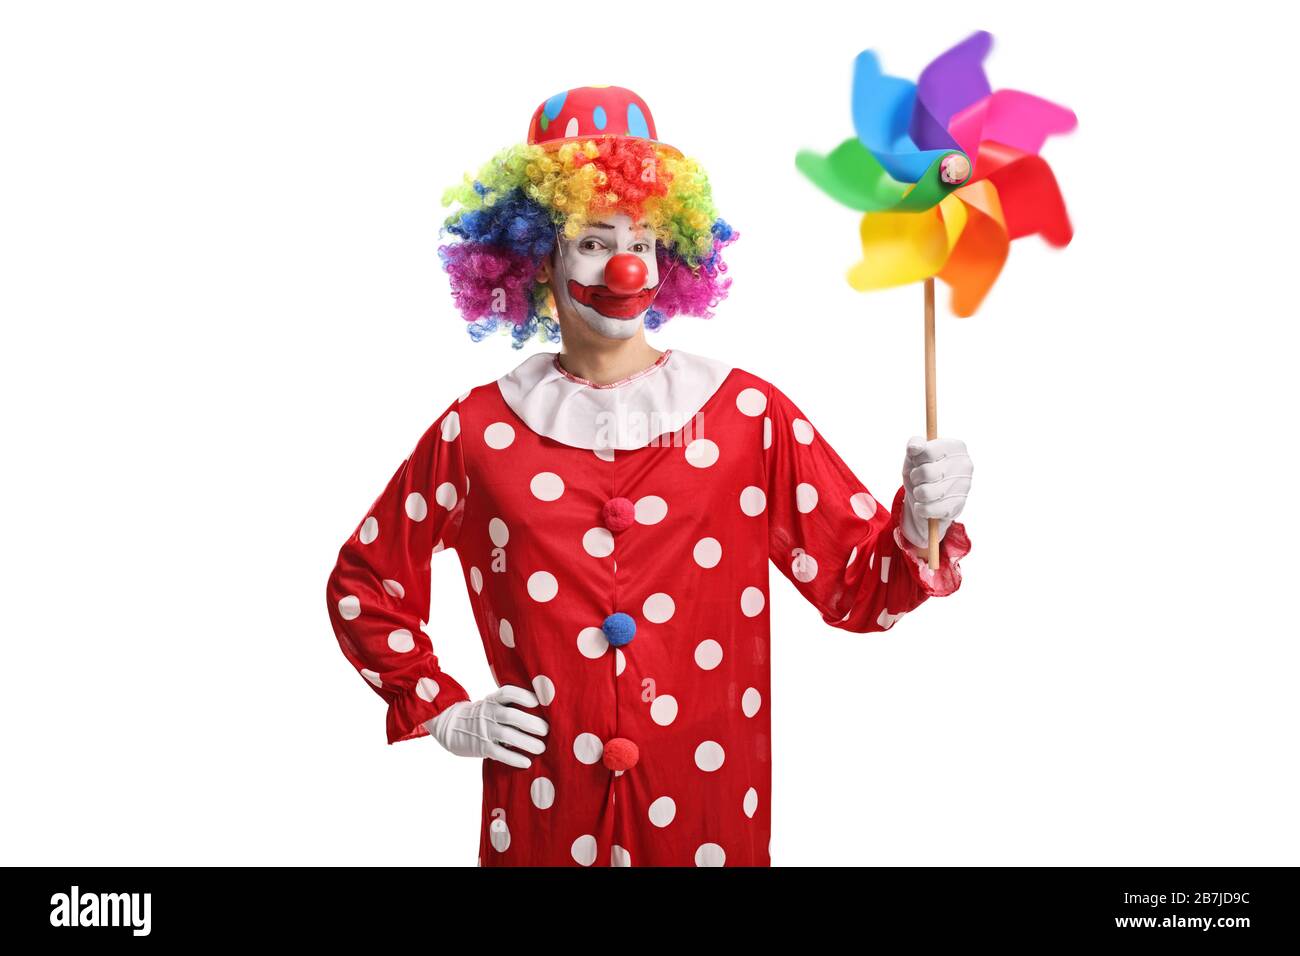 Clown che tiene una ruota girevole colorata isolata su sfondo bianco Foto Stock